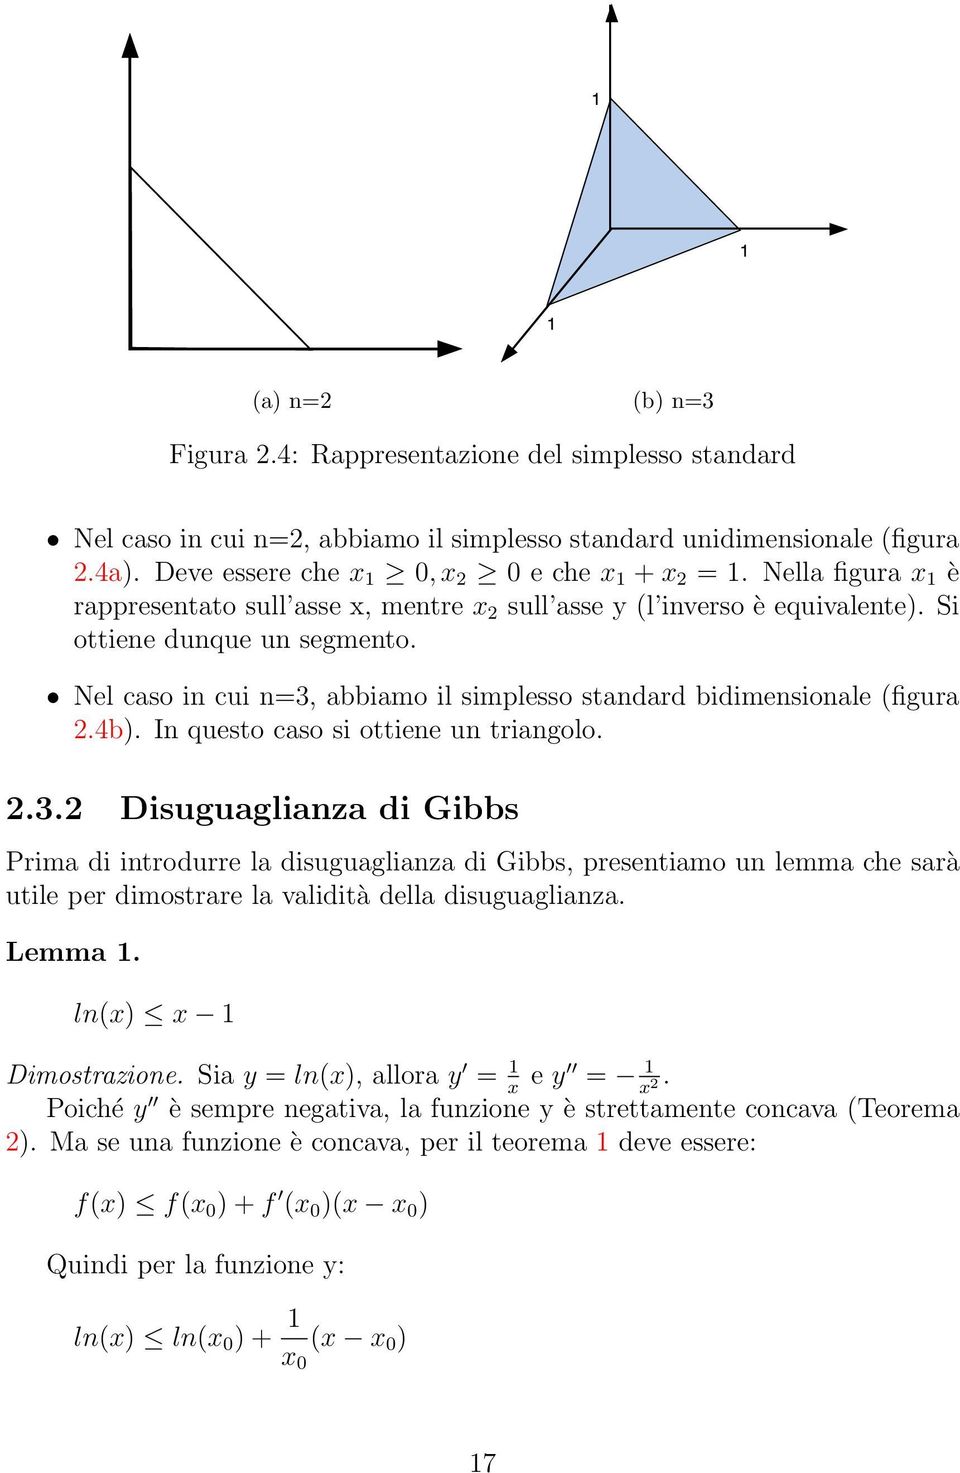 Nel caso in cui n=3, abbiamo il simplesso standard bidimensionale (figura 2.4b). In questo caso si ottiene un triangolo. 2.3.2 Disuguaglianza di Gibbs Prima di introdurre la disuguaglianza di Gibbs, presentiamo un lemma che sarà utile per dimostrare la validità della disuguaglianza.